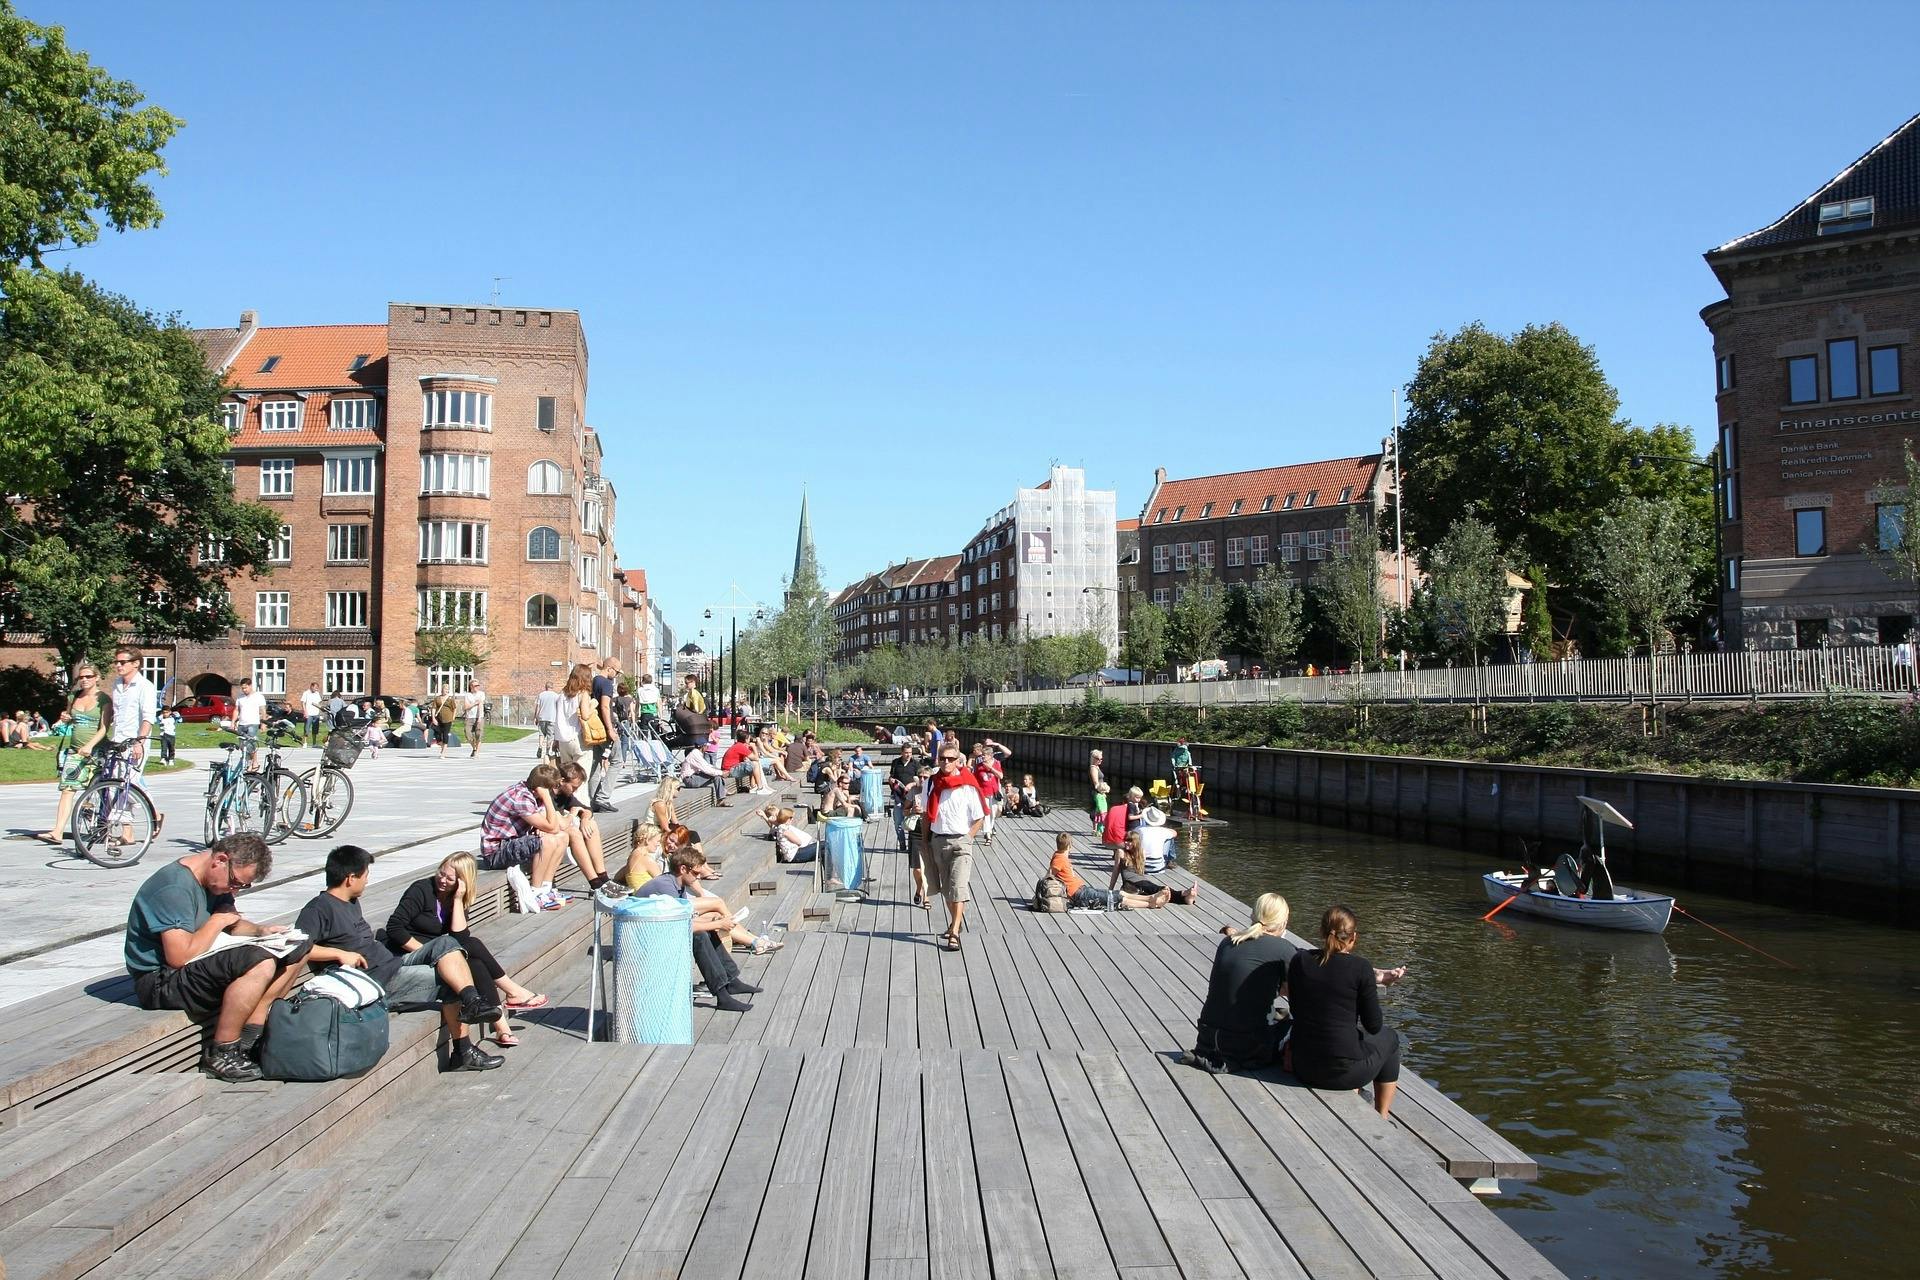 Samodzielny spacer tajemniczy: Morderstwo nad rzeką Aarhus